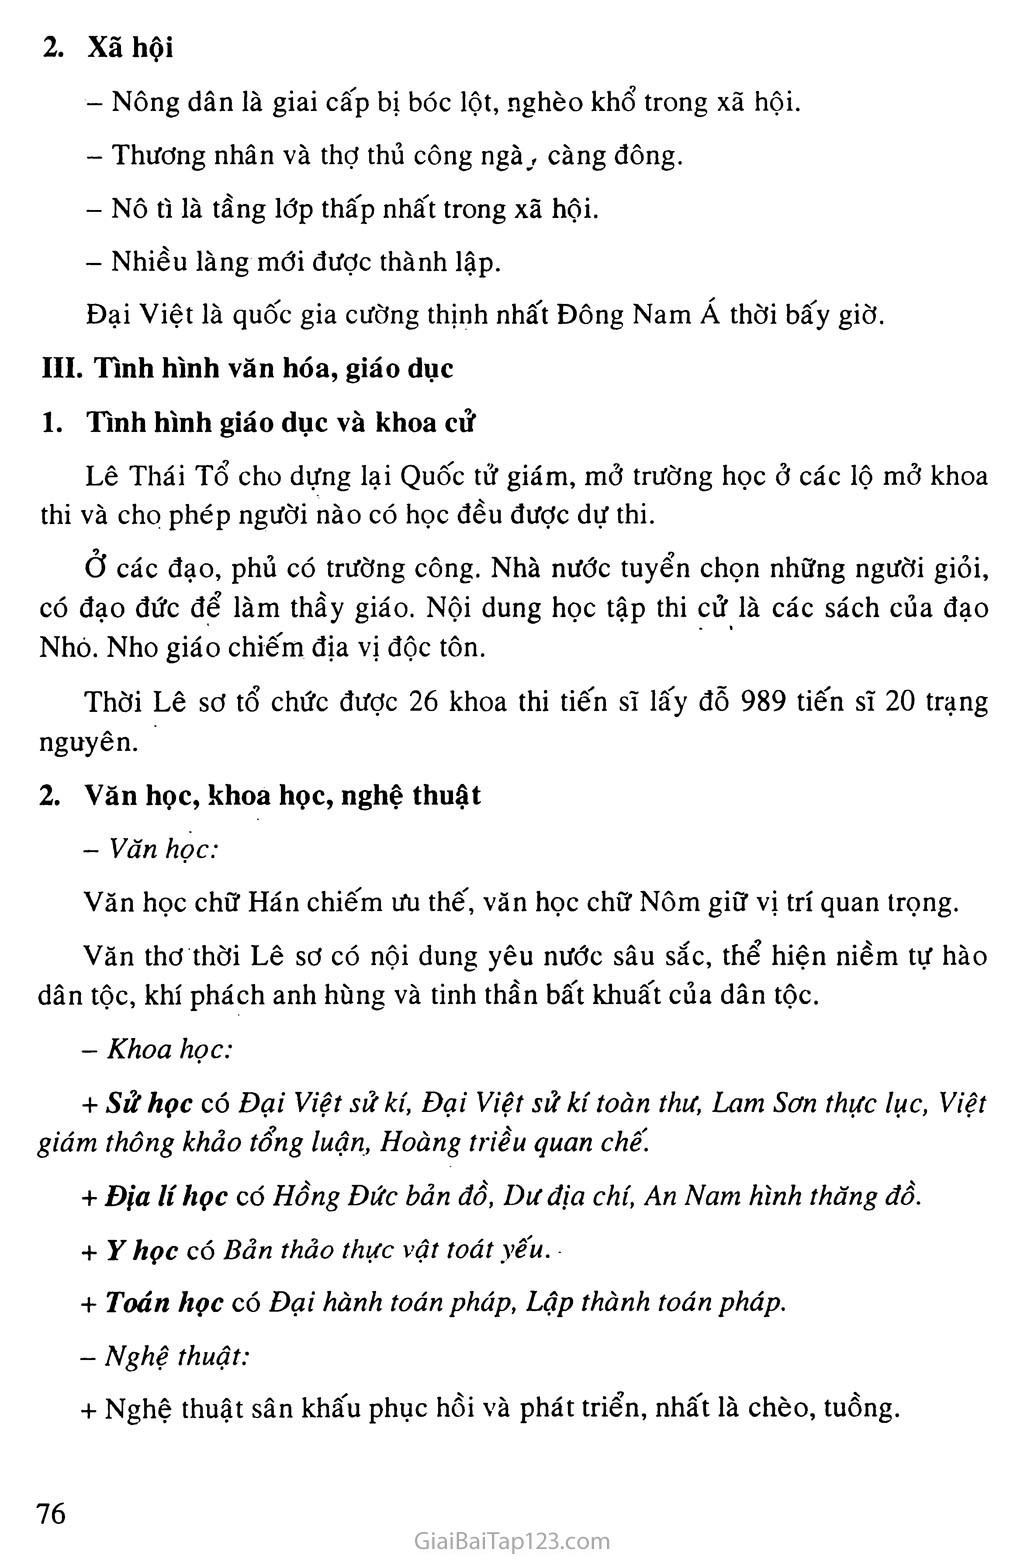 Bài 20: Nước Đại Việt thời Lê Sơ (1428 - 1527) trang 3